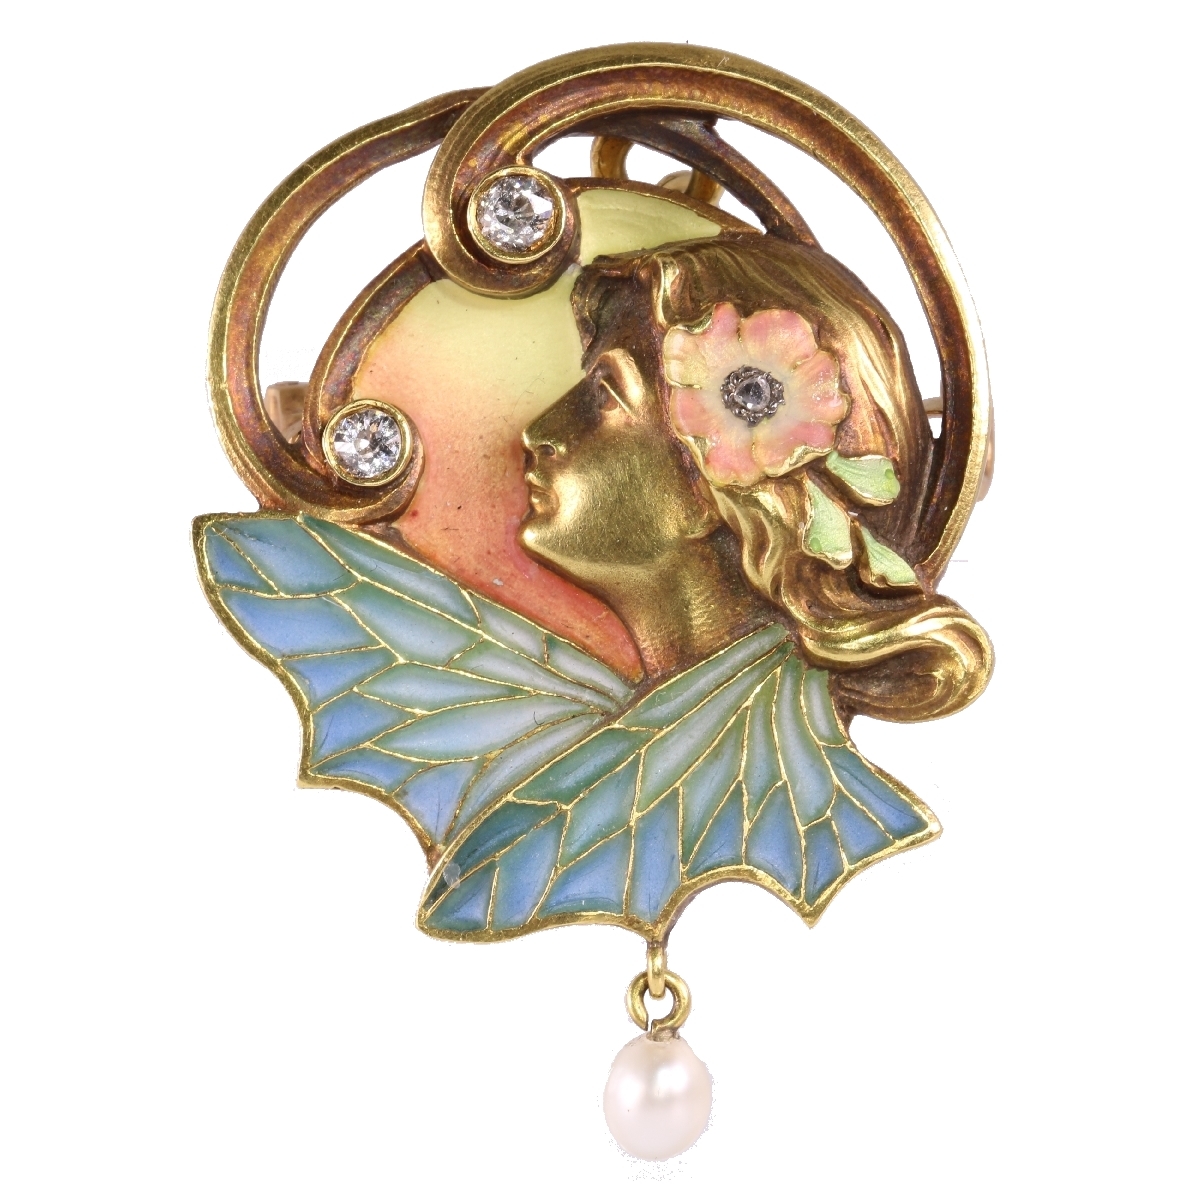 High quality Art Nouveau pendant/brooch with plique a jour enamel